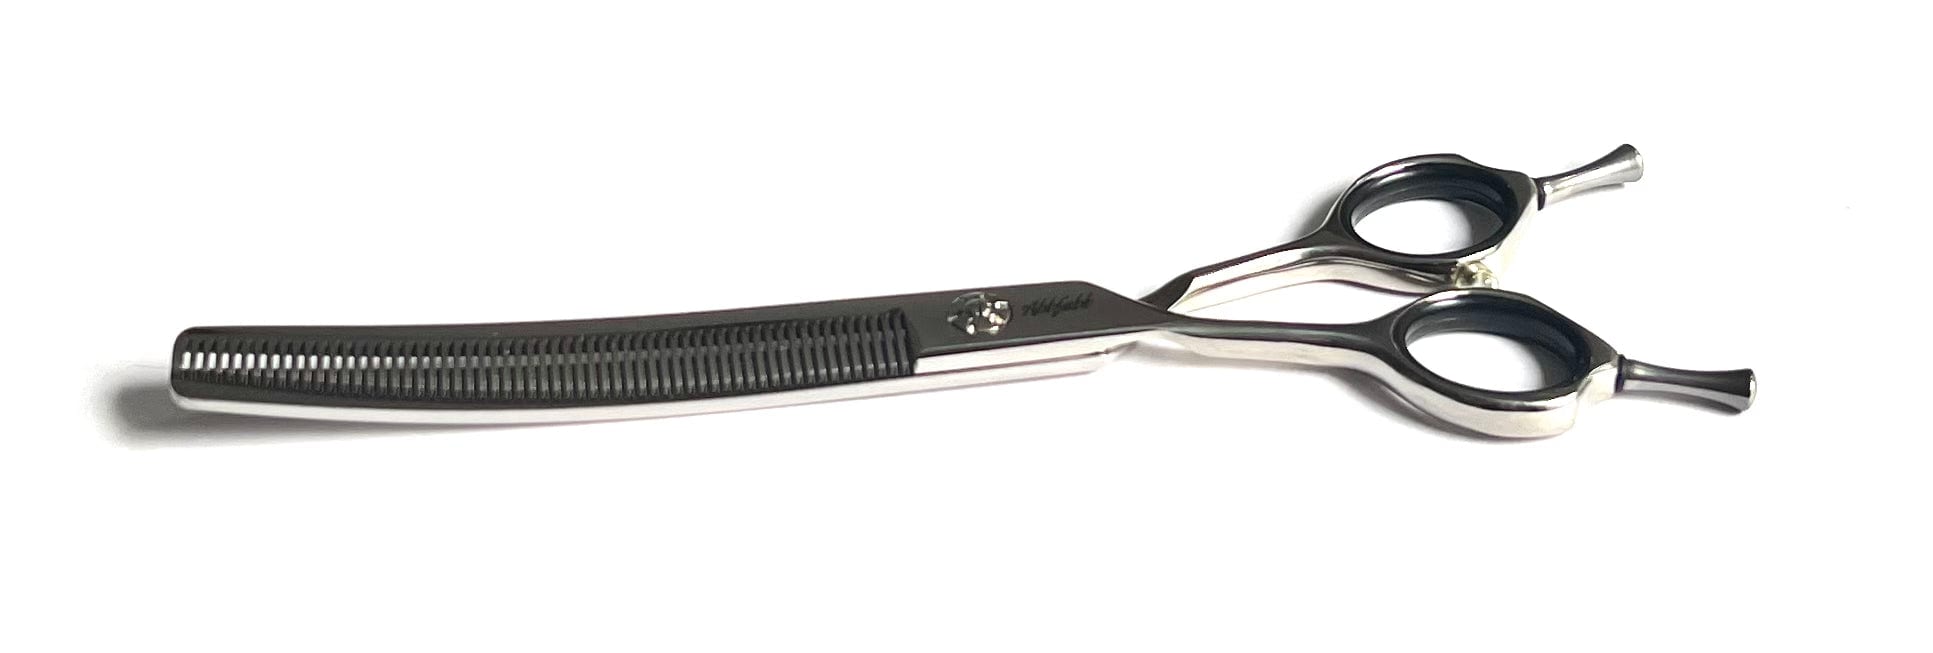 Abbfabb Grooming Scissors Ltd Left Handed 7” Reversible Curved Blending Dog Grooming Scissor. Left Handed 7" Flippable Blending Scissor with Micro Serrate Teeth. 